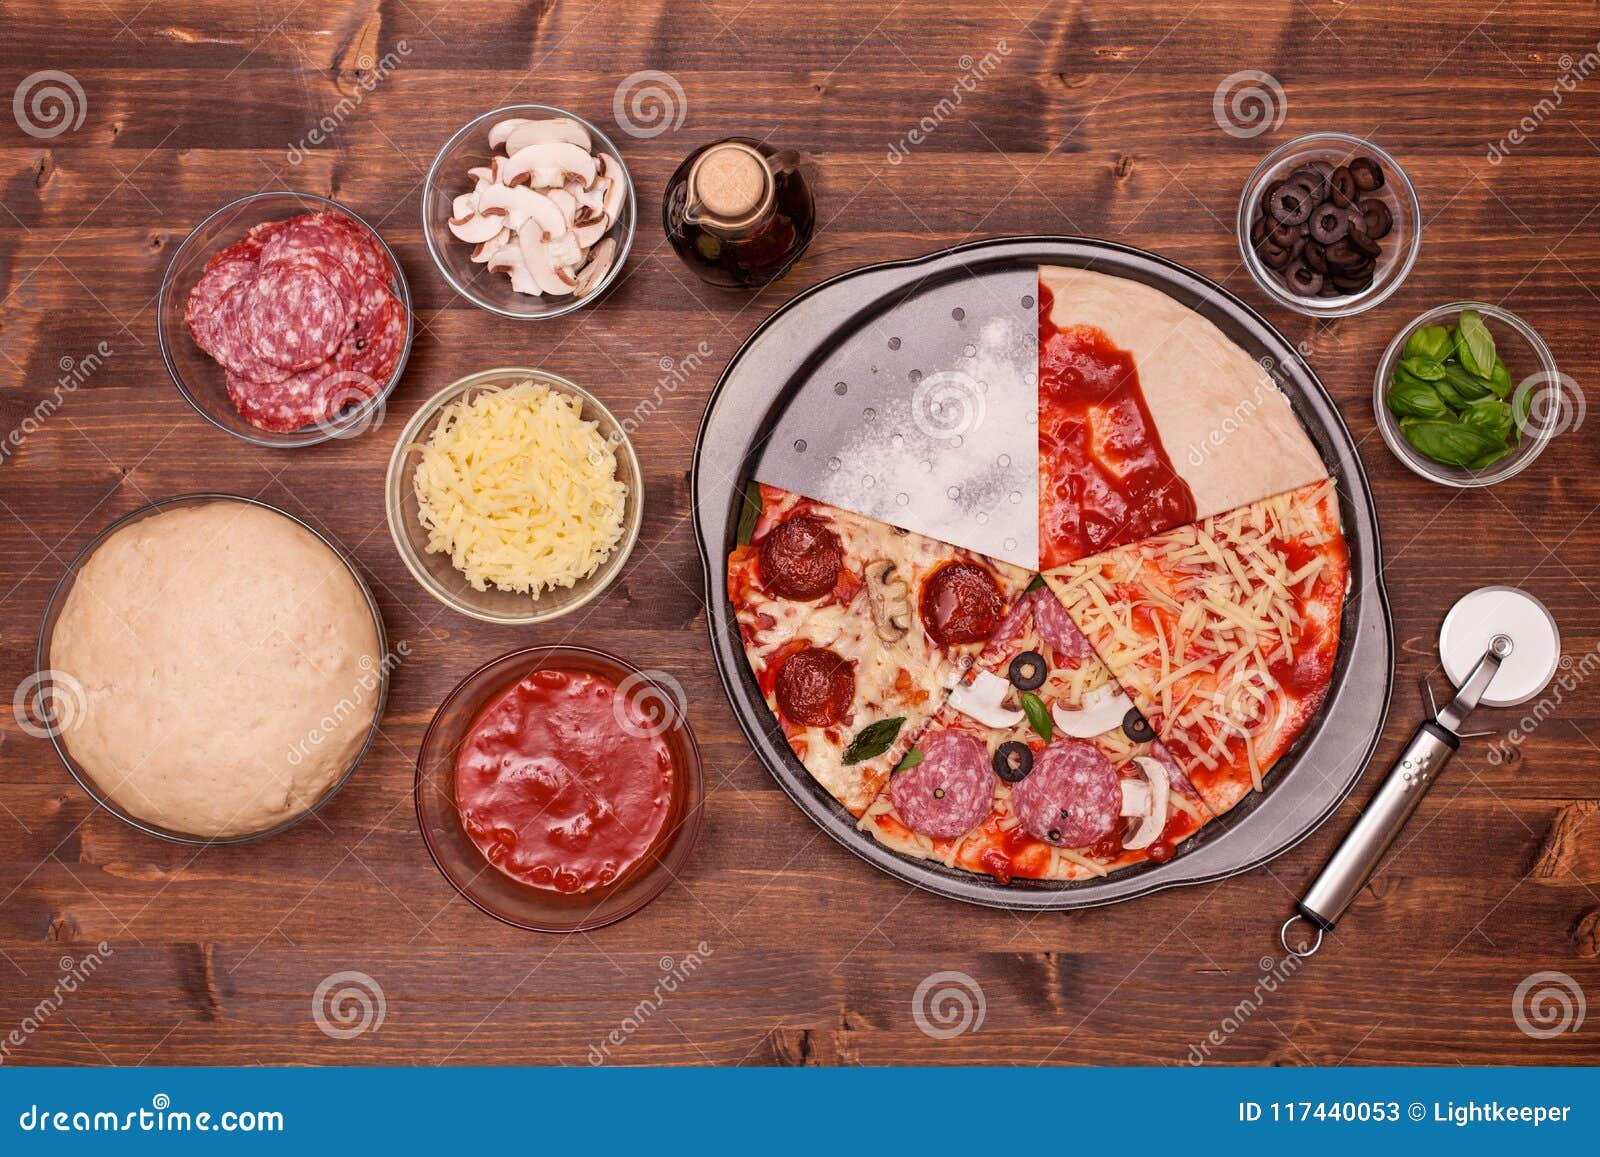 что нужно для пиццы в домашних условиях в духовке ингредиенты фото 119